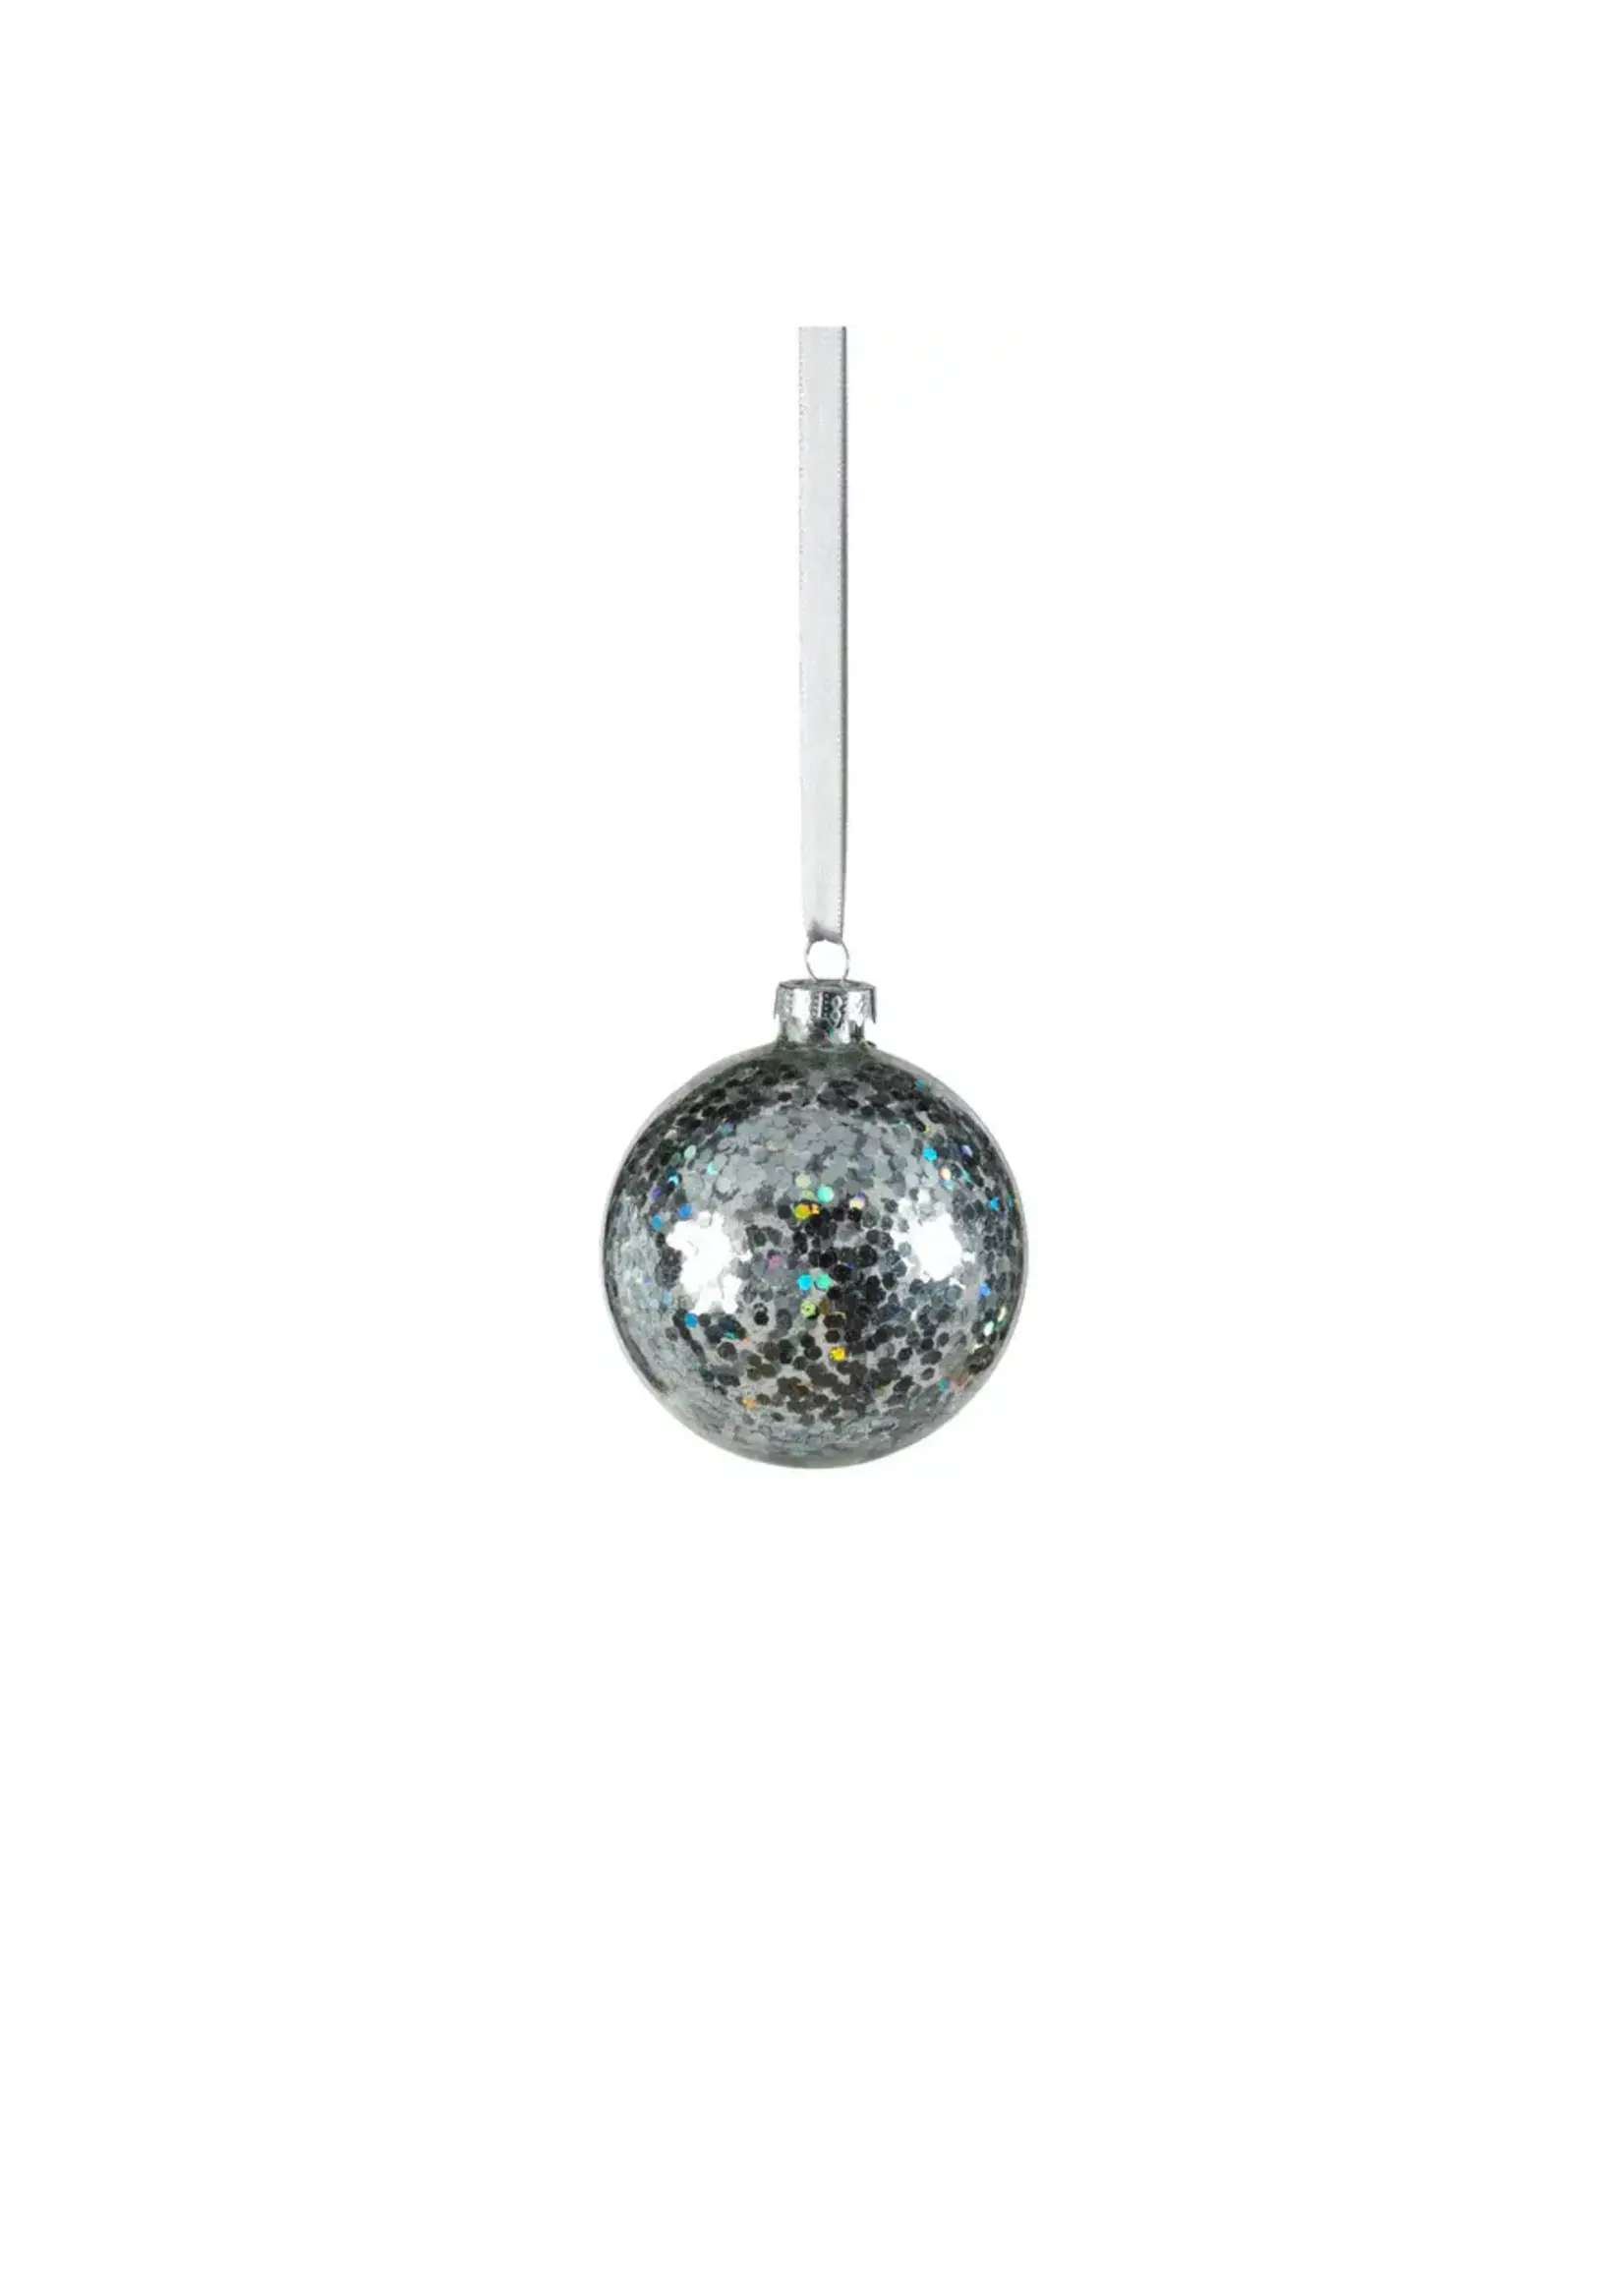 Zodax Confetti Glass Ball Ornament, Silver, 3.25"